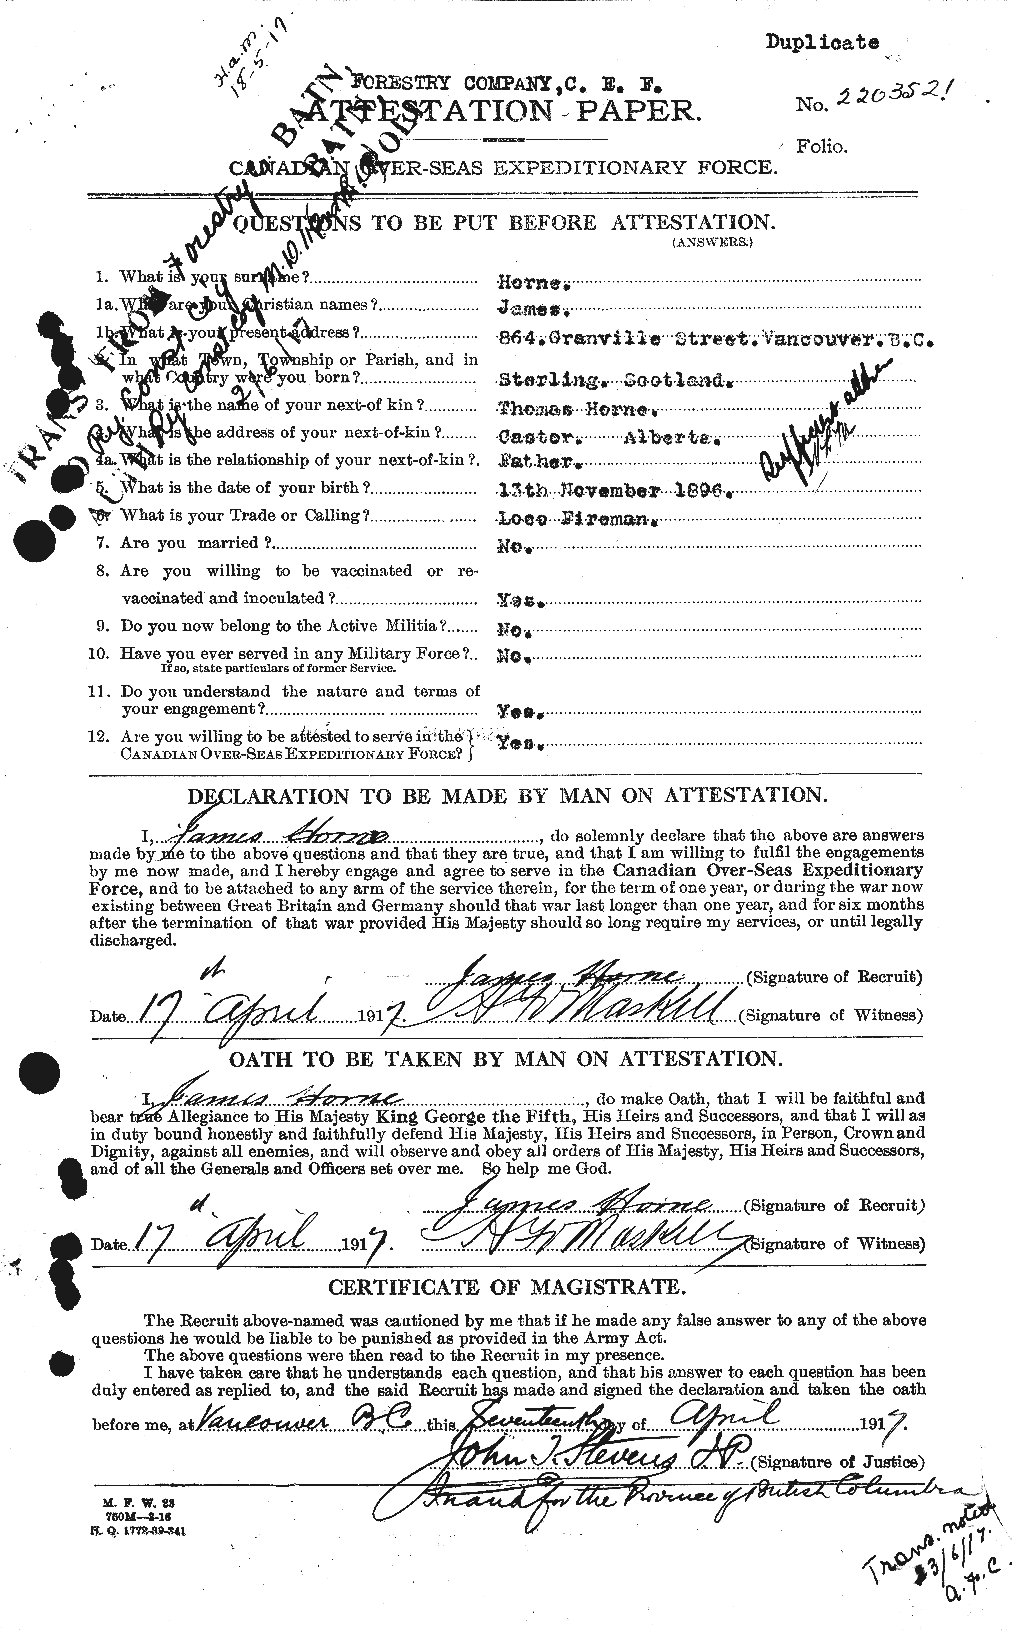 Dossiers du Personnel de la Première Guerre mondiale - CEC 399639a